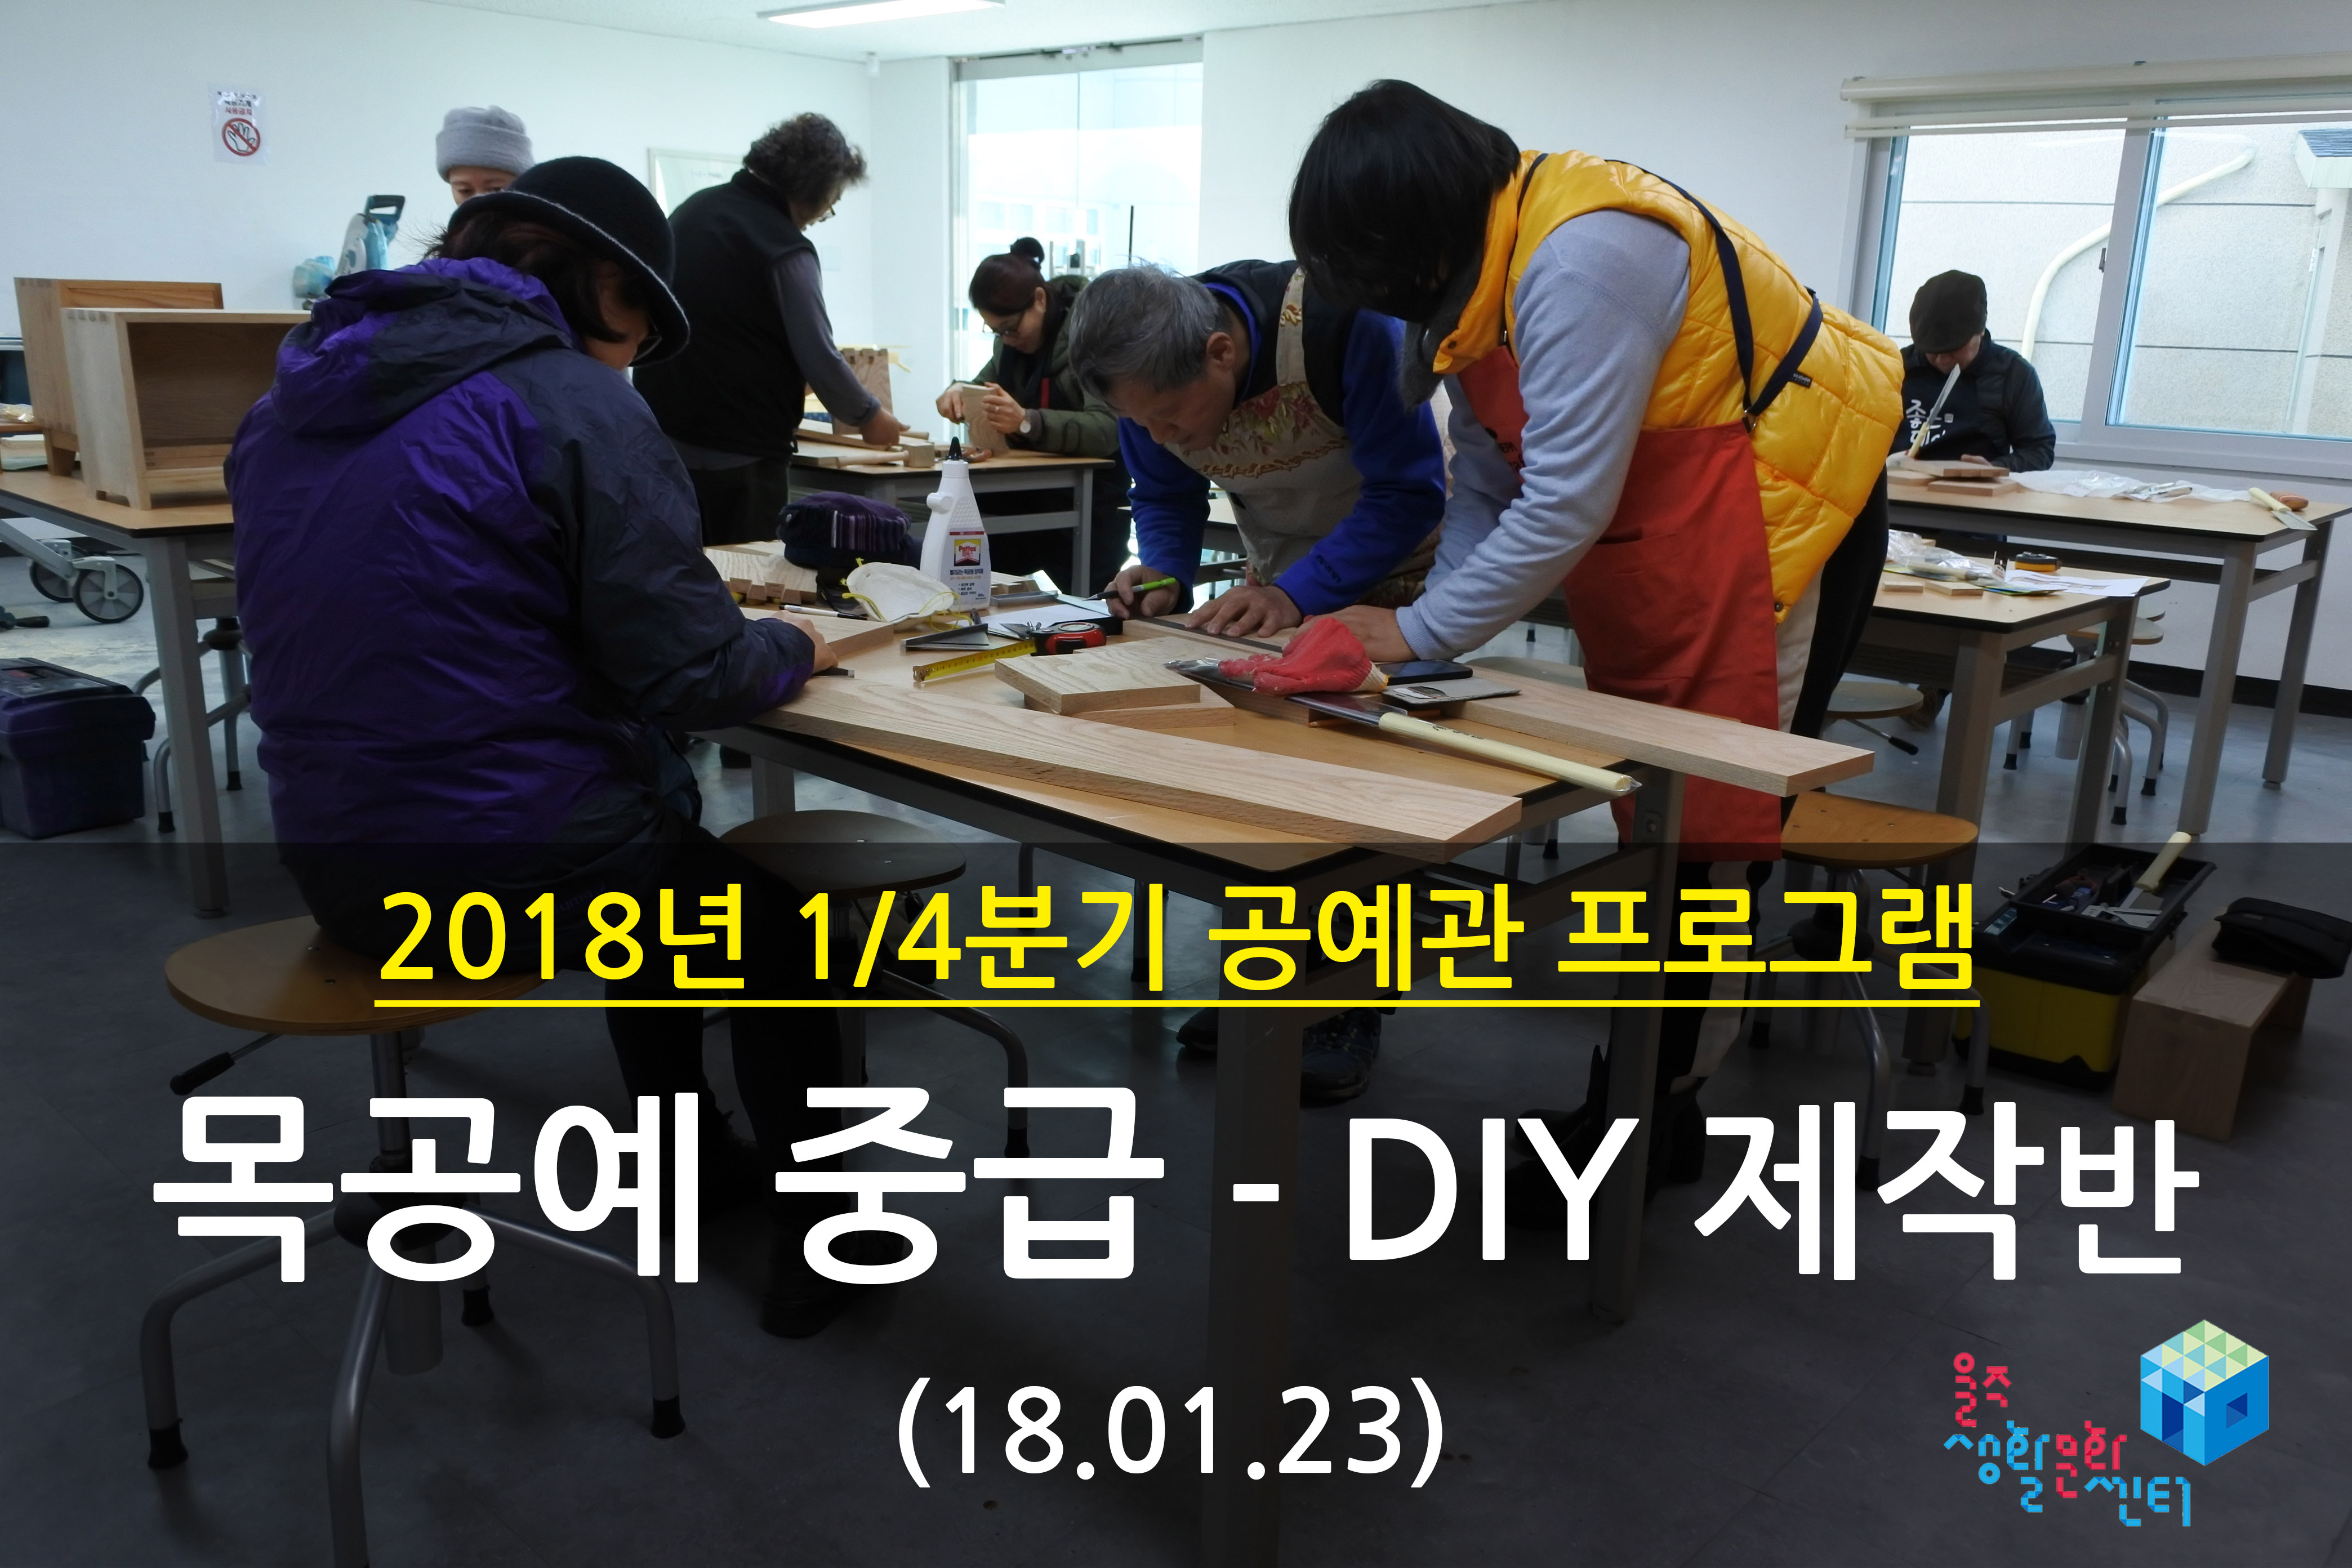 2018.01.23 _ 목공예 중급 - DIY 제작반 _ 1/4분기 3주차 수업